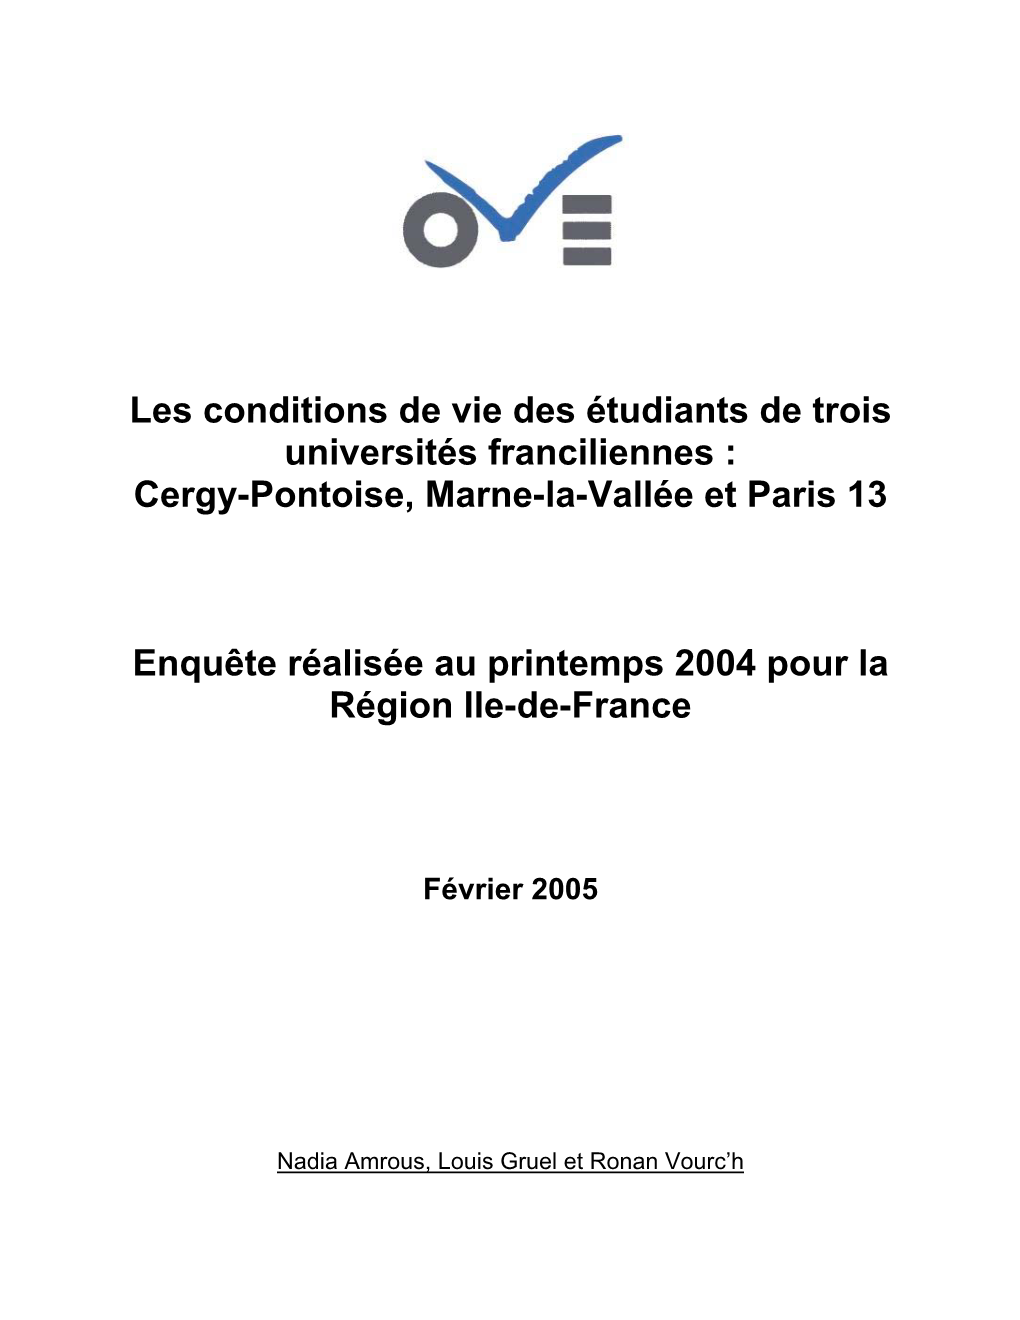 Les Conditions De Vie Des Étudiants De Trois Universités Franciliennes : Cergy-Pontoise, Marne-La-Vallée Et Paris 13